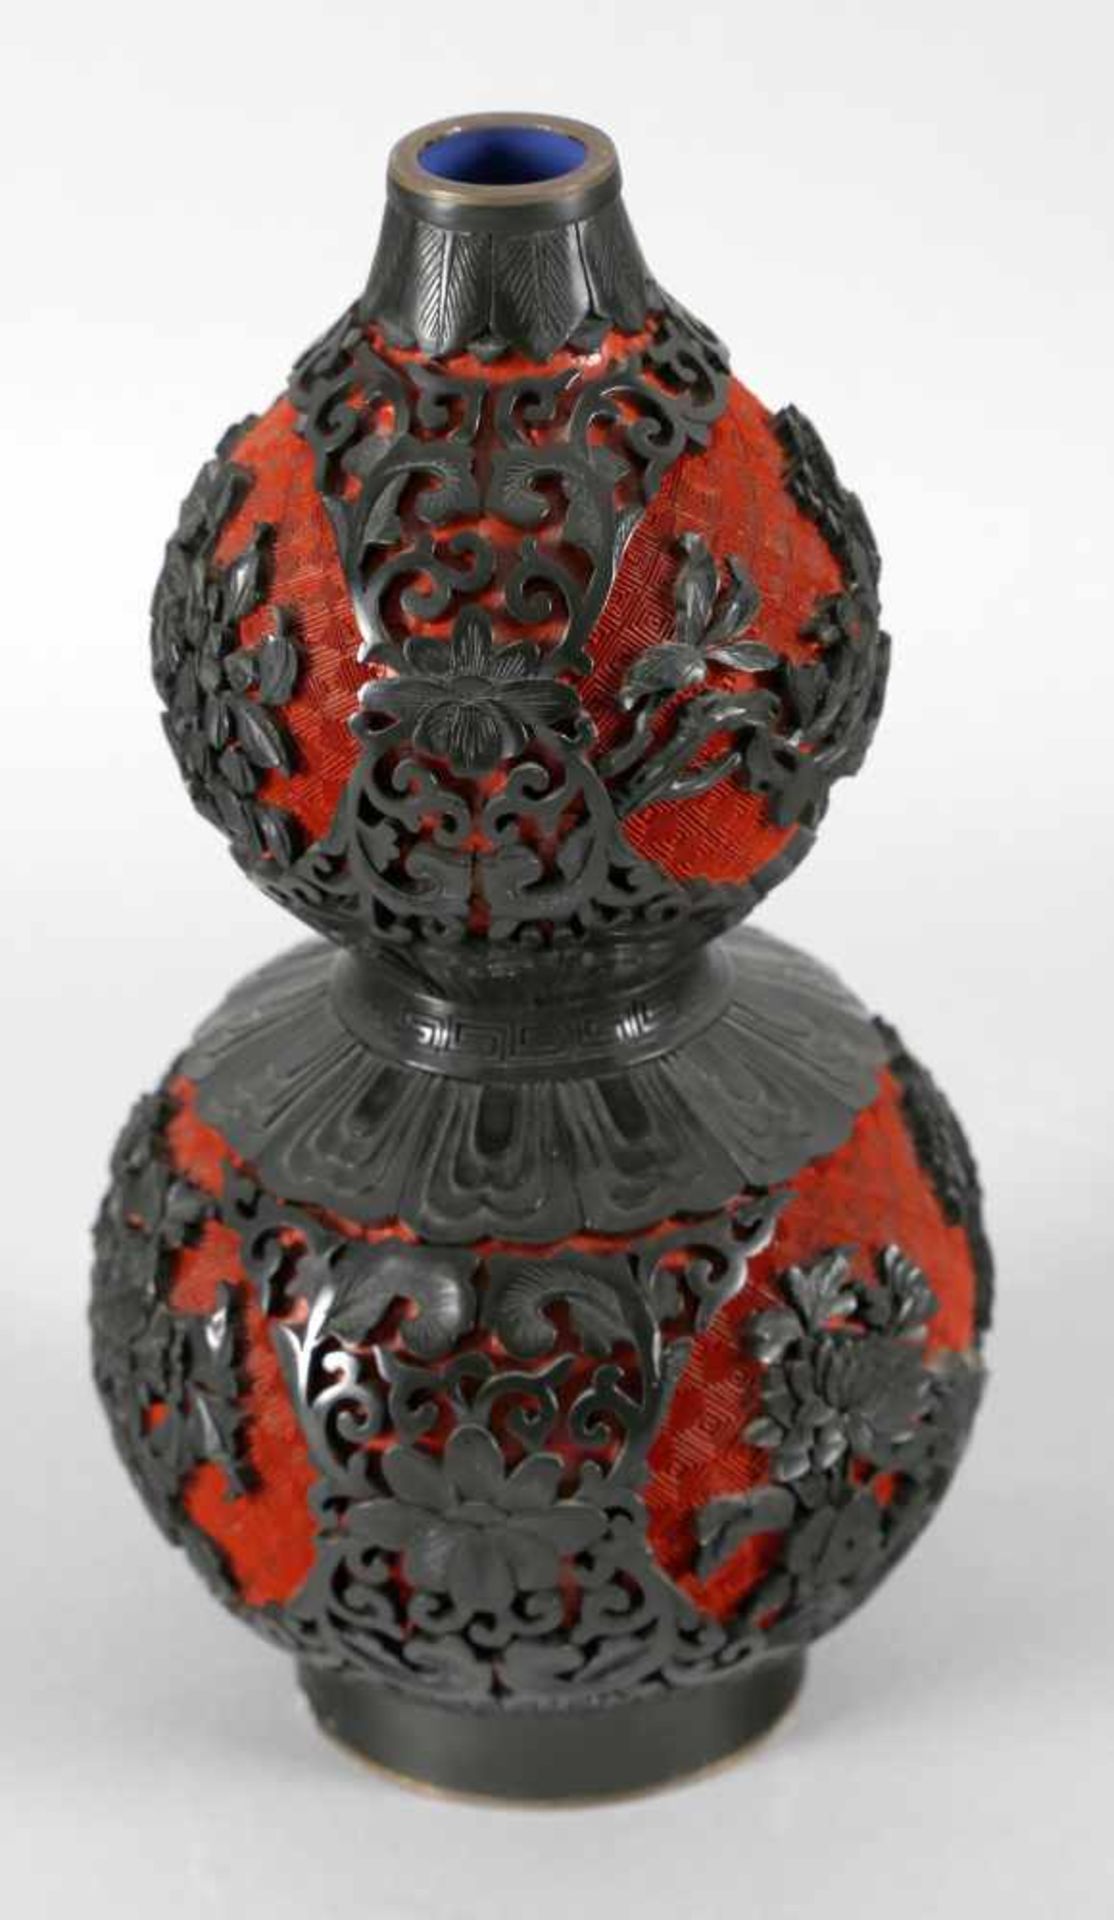 Chinesische Lackvase, zweifarbig rot und schwarz, 19./20. Jh.doppelkugliger Korpus mit rundem